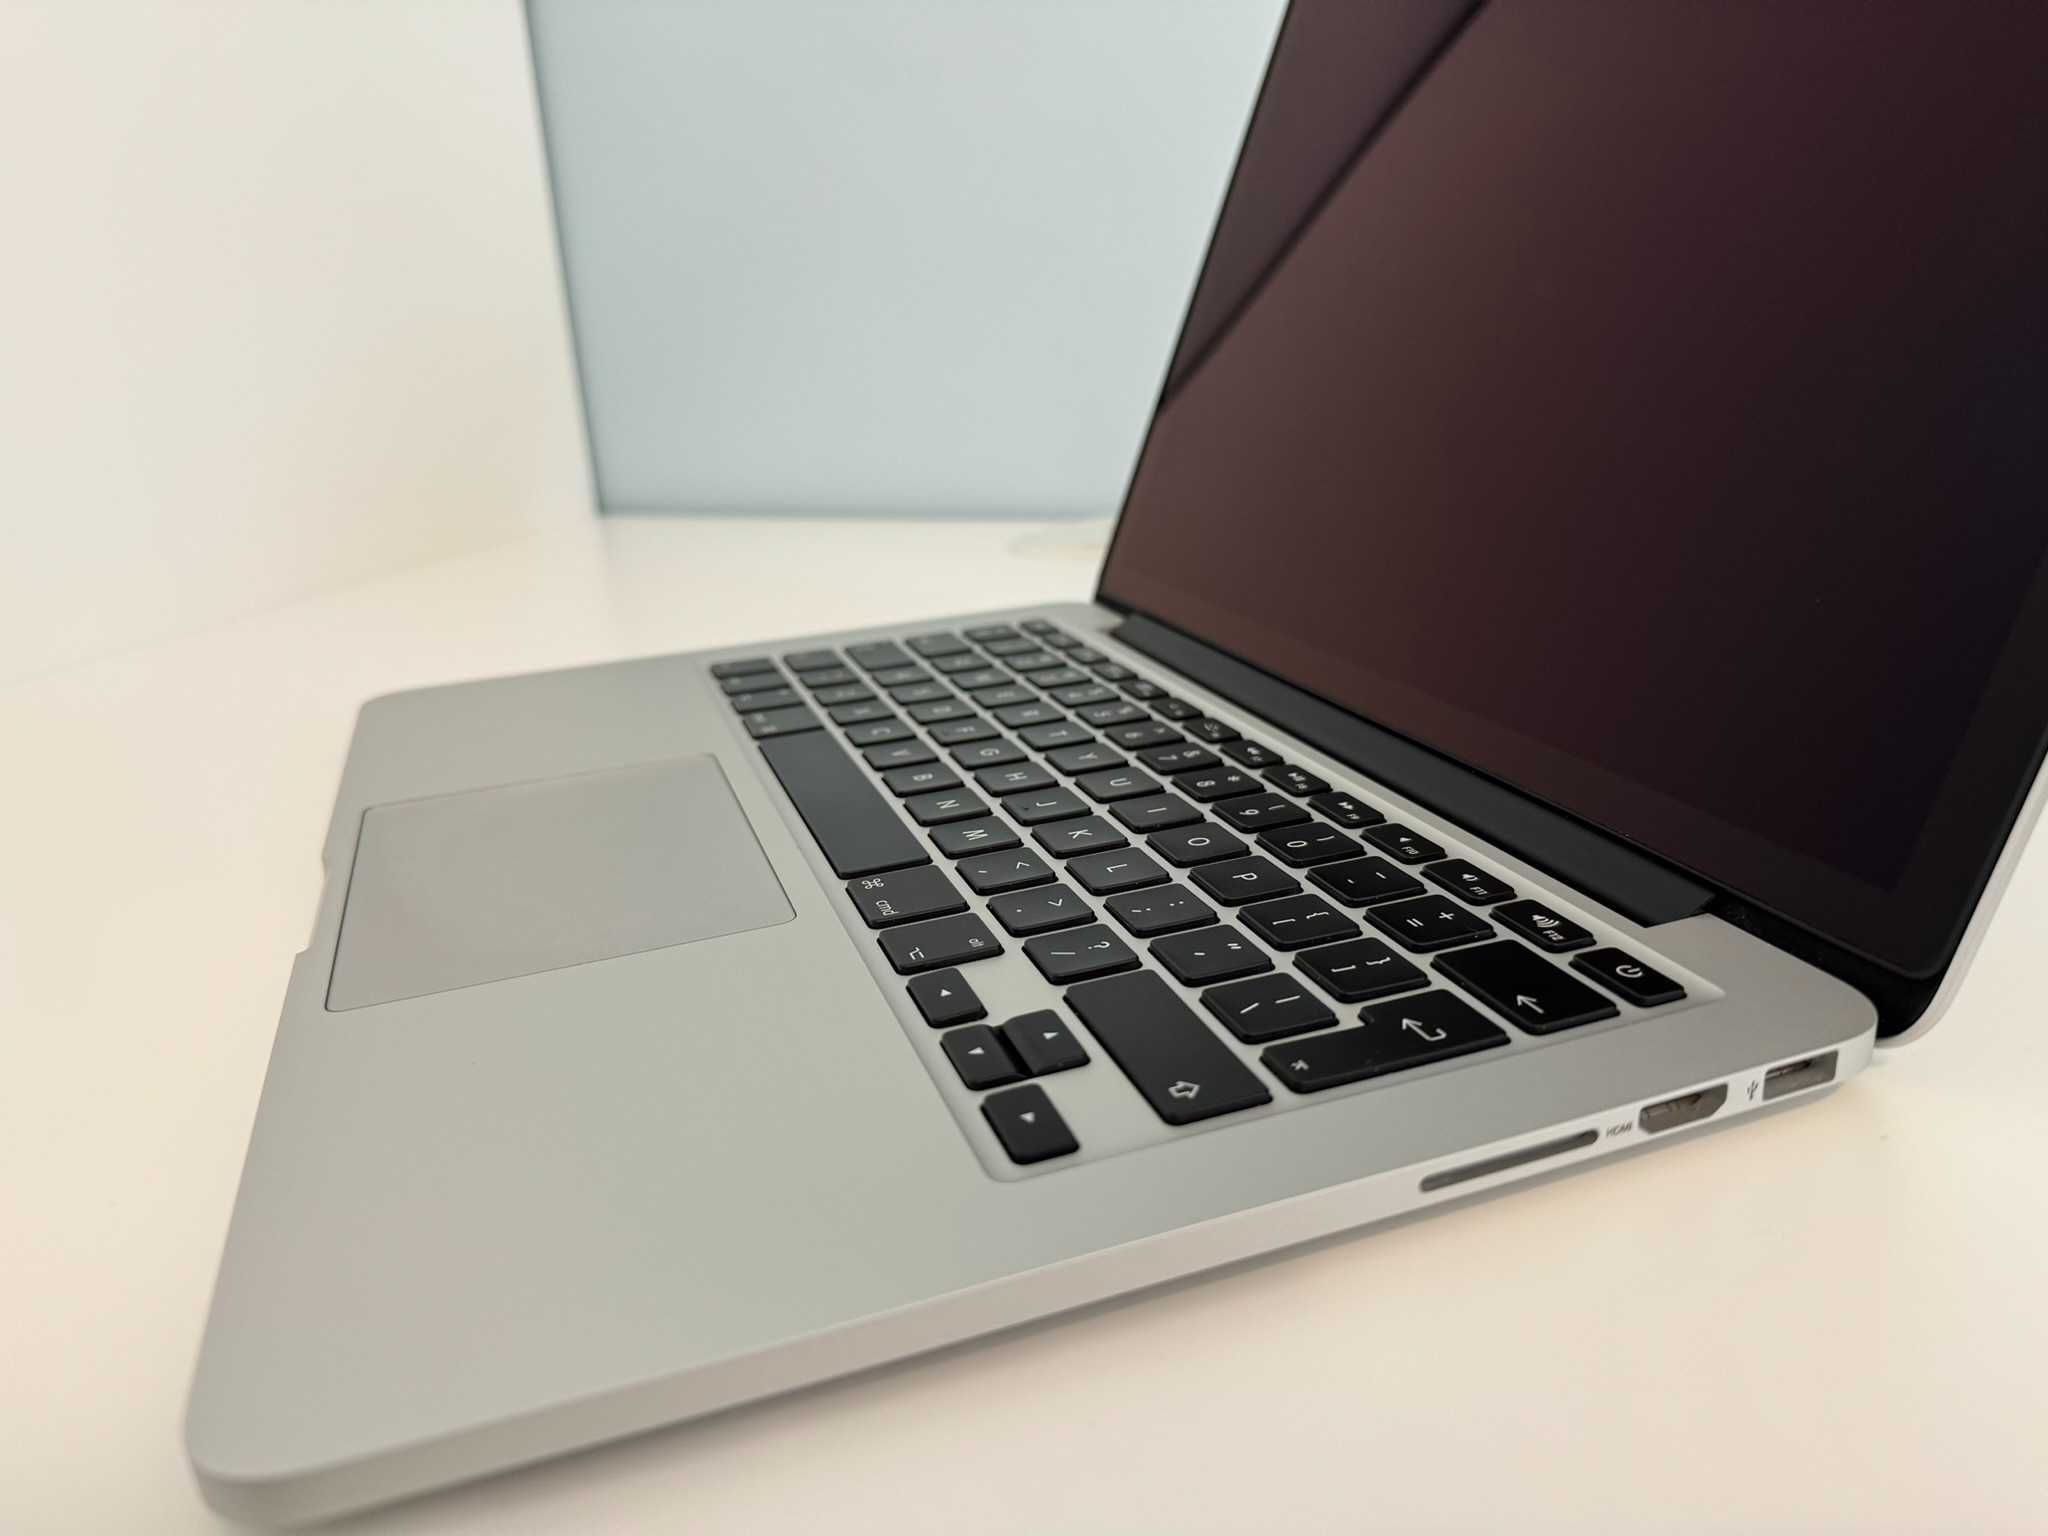 Vand Macbook Pro Retina 13" Mid 2015 - 2.7GHz dual-core Intel Core i5